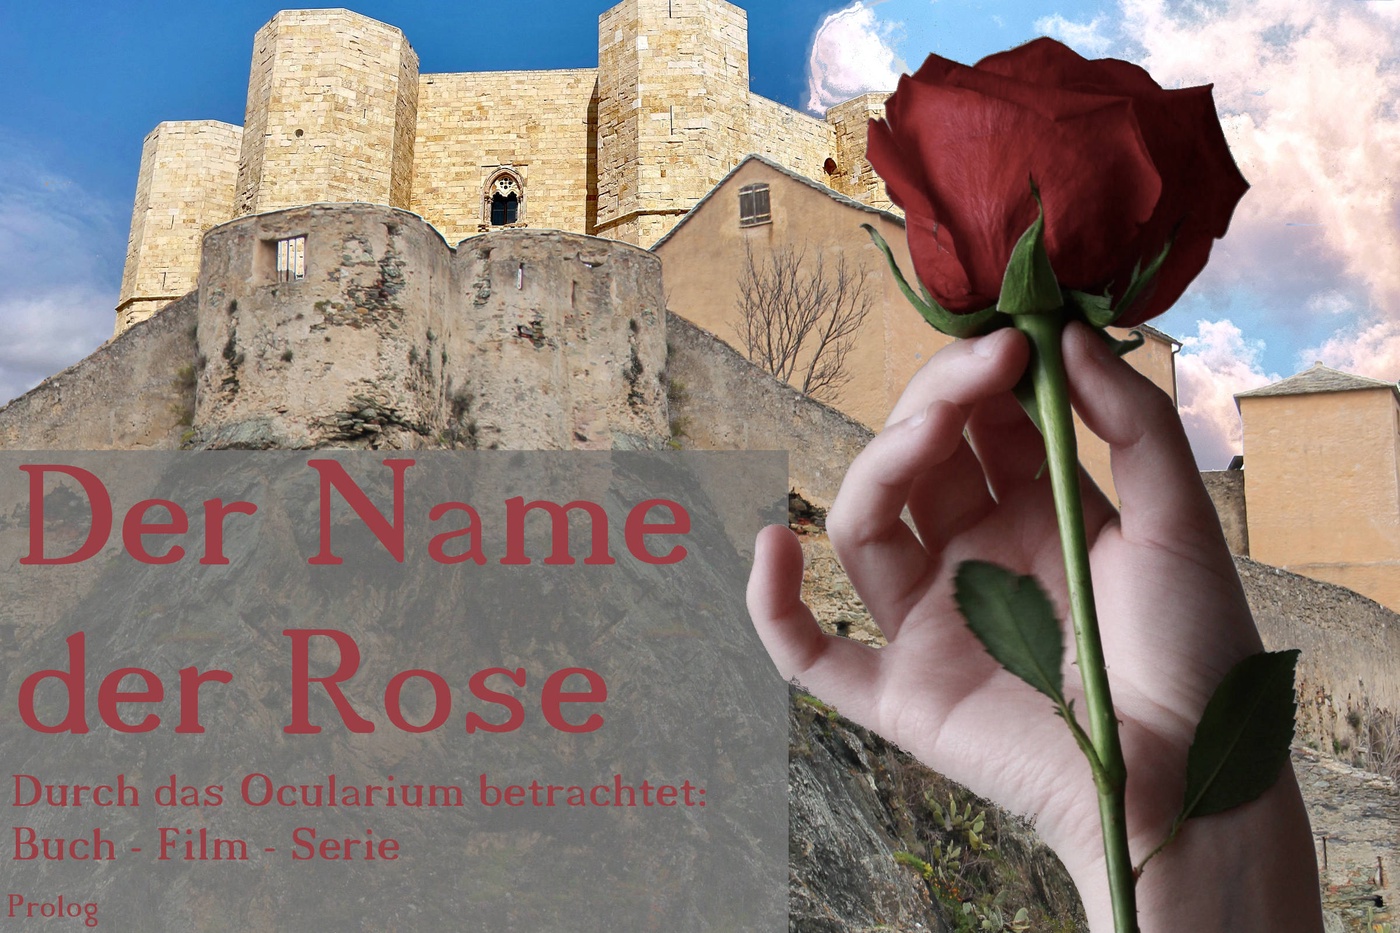 Der Name der Rose - Durch das Ocularium betrachtet: Buch - Film - Serie (2)